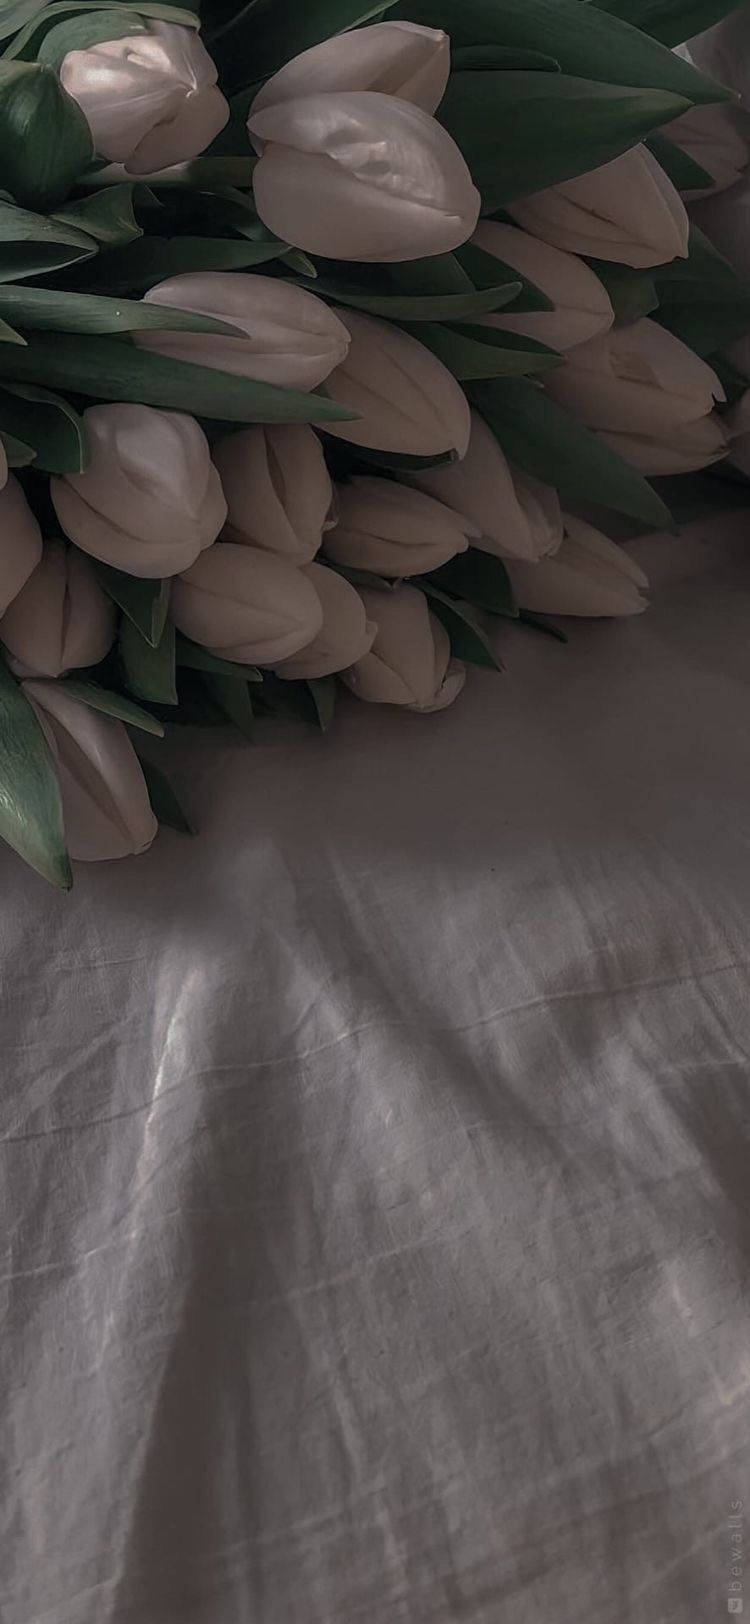 White Flower On White Sheet iPhone Wallpaper